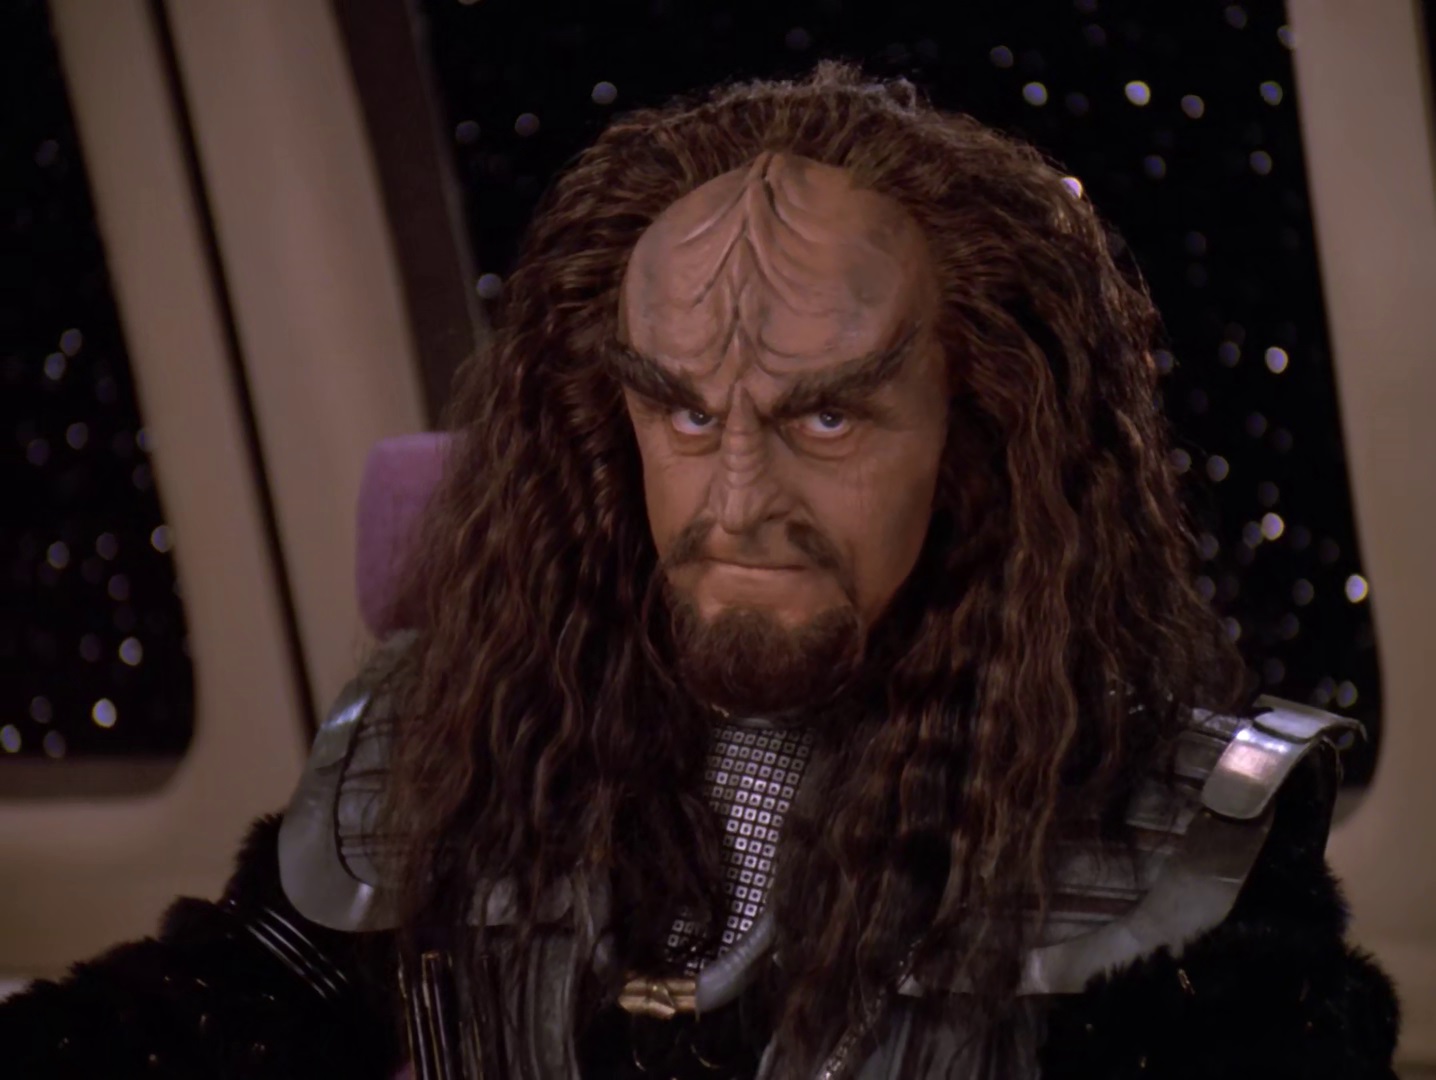 Male Klingon